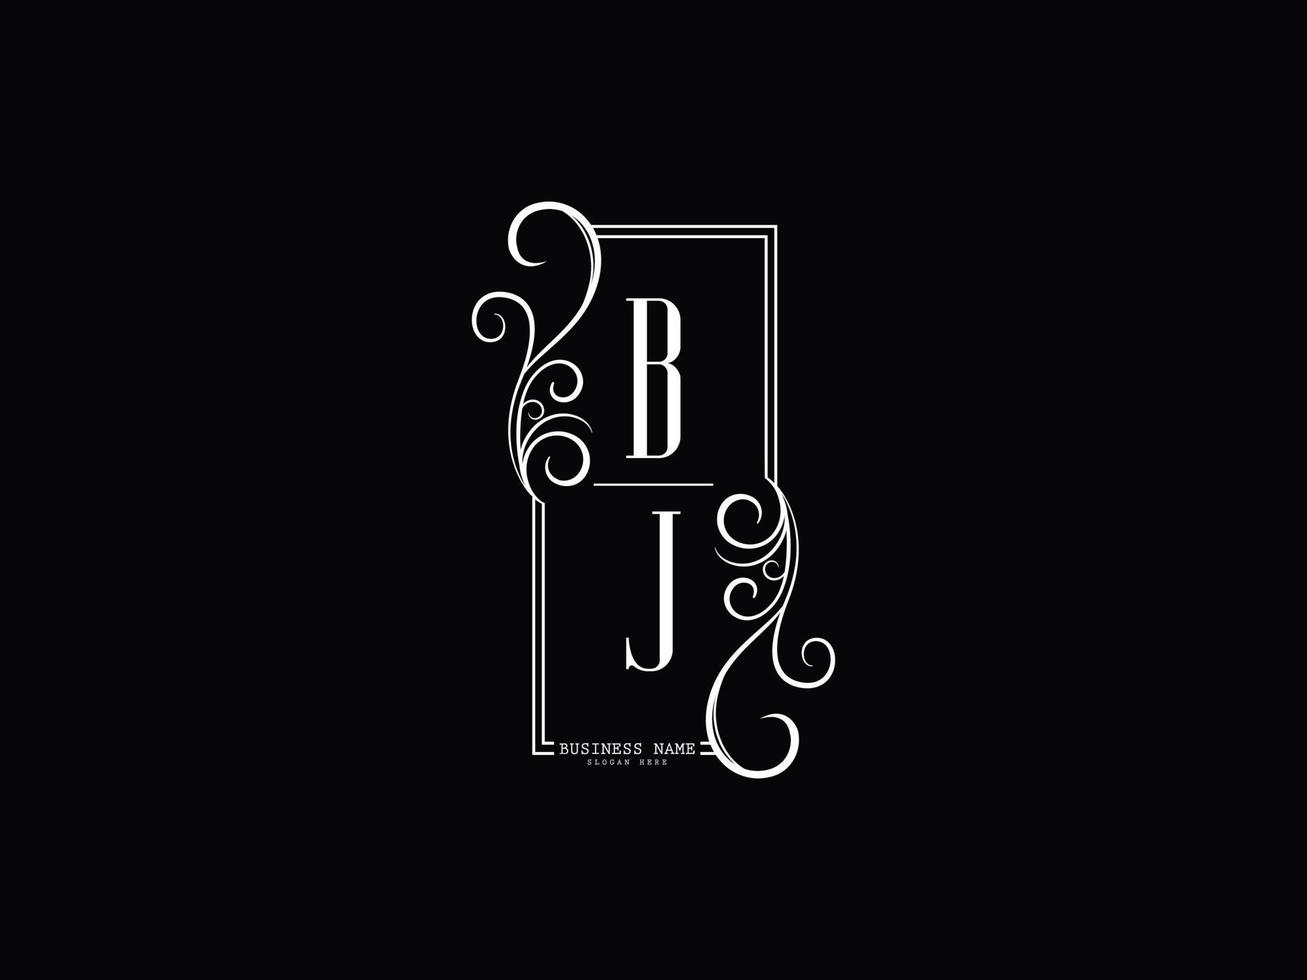 Initials BJ Logo Image, Luxury Bj jb Letter Logo Design vector